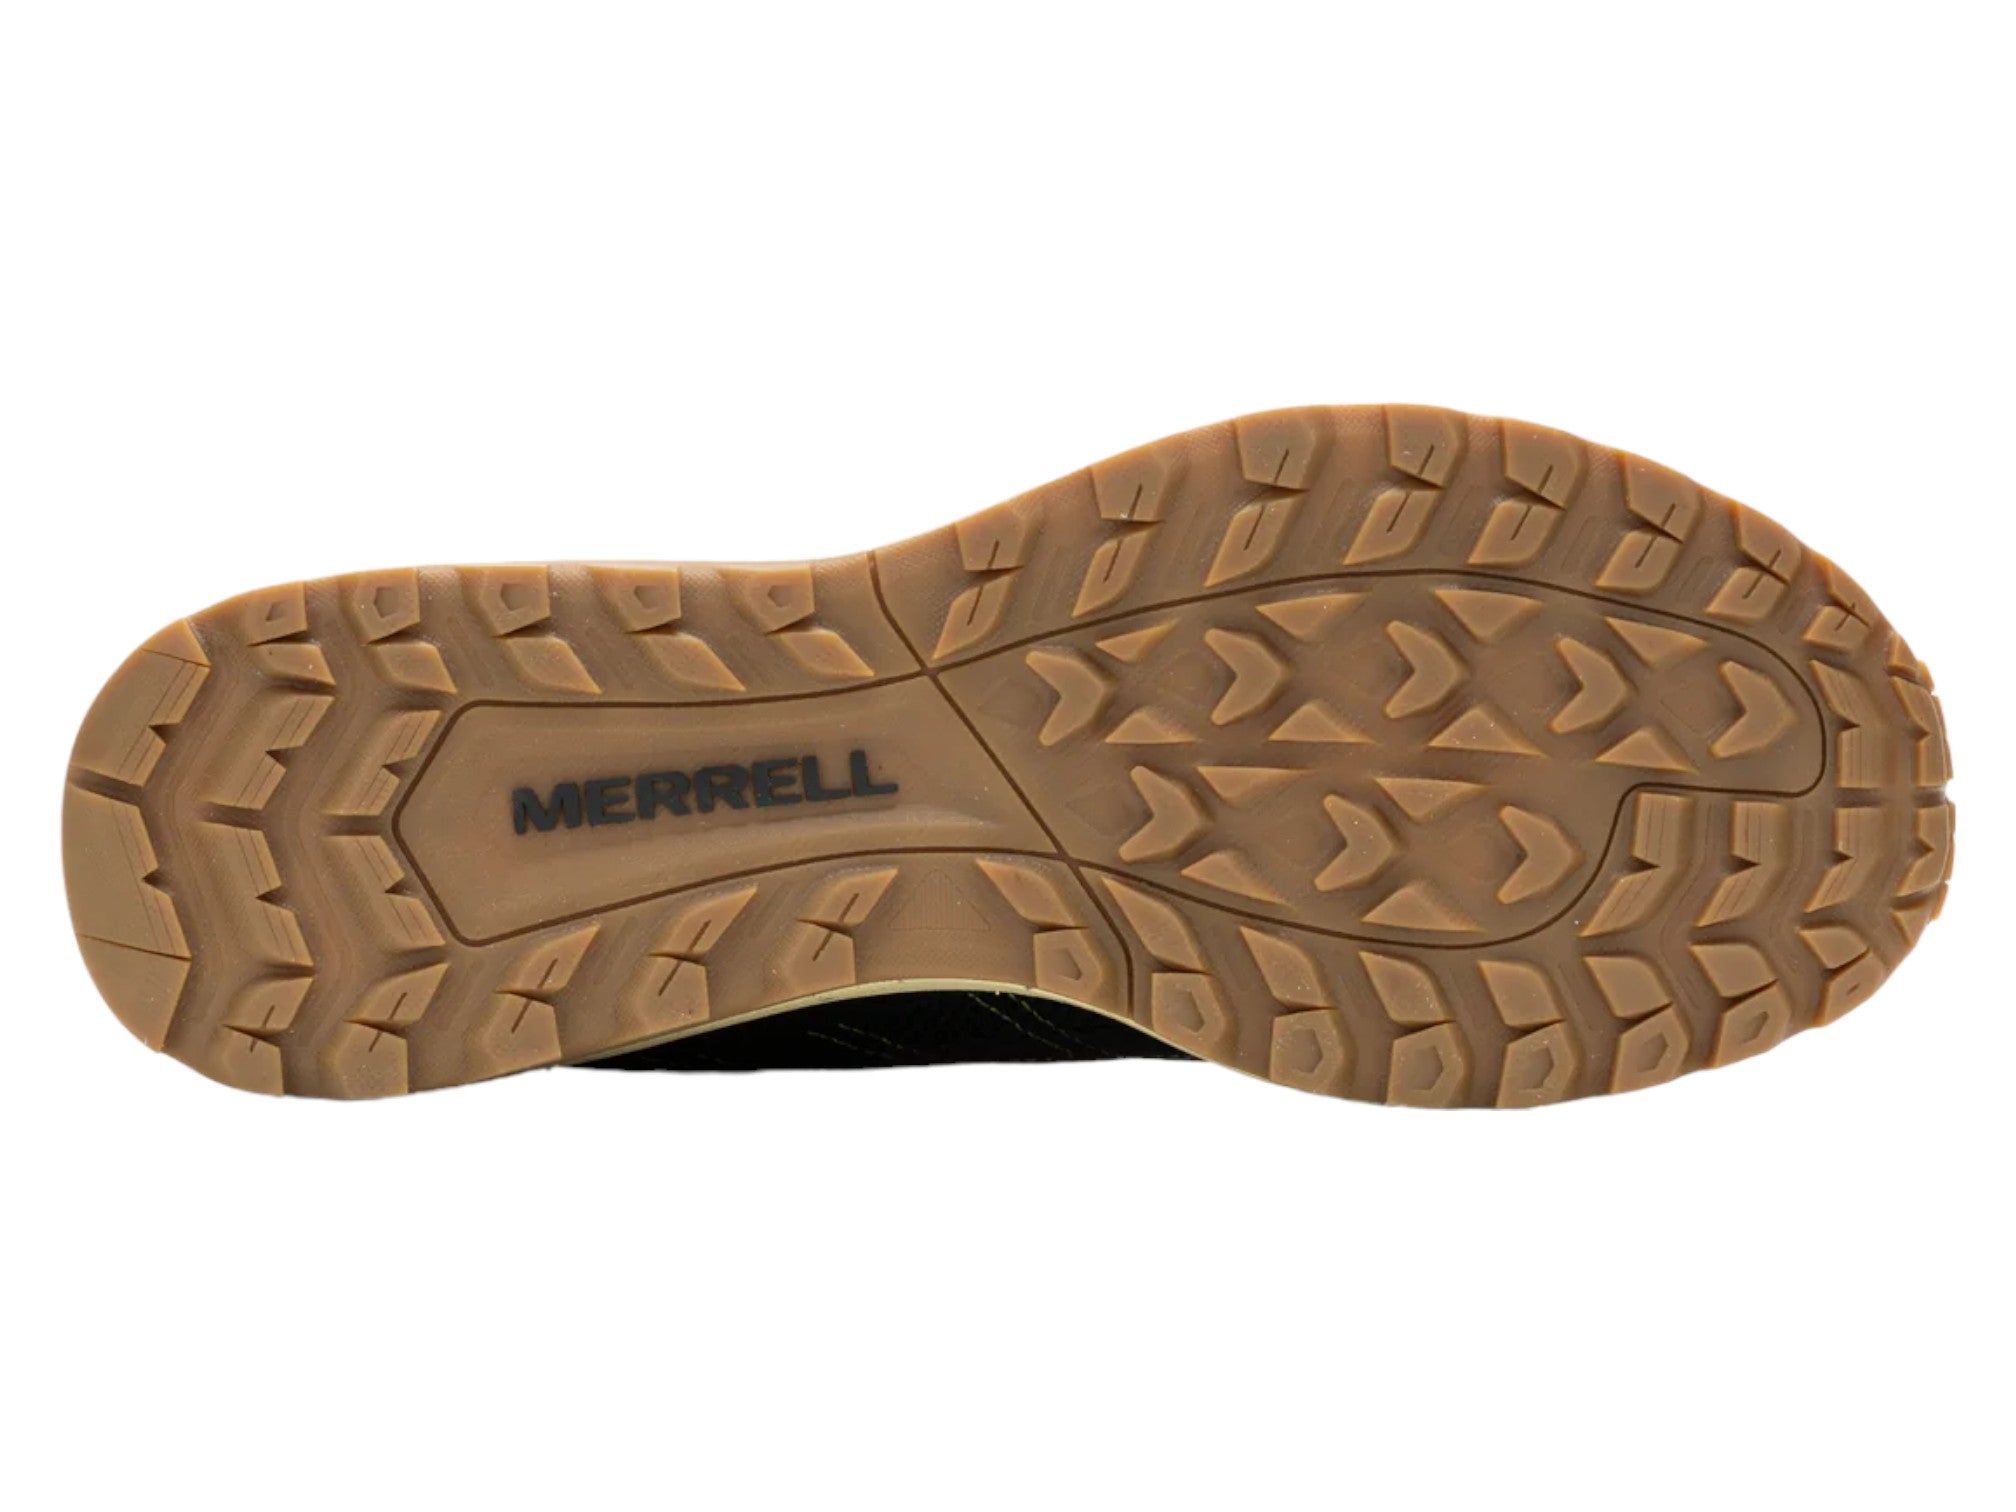 Merrell Fly Strike Sneaker - Men's